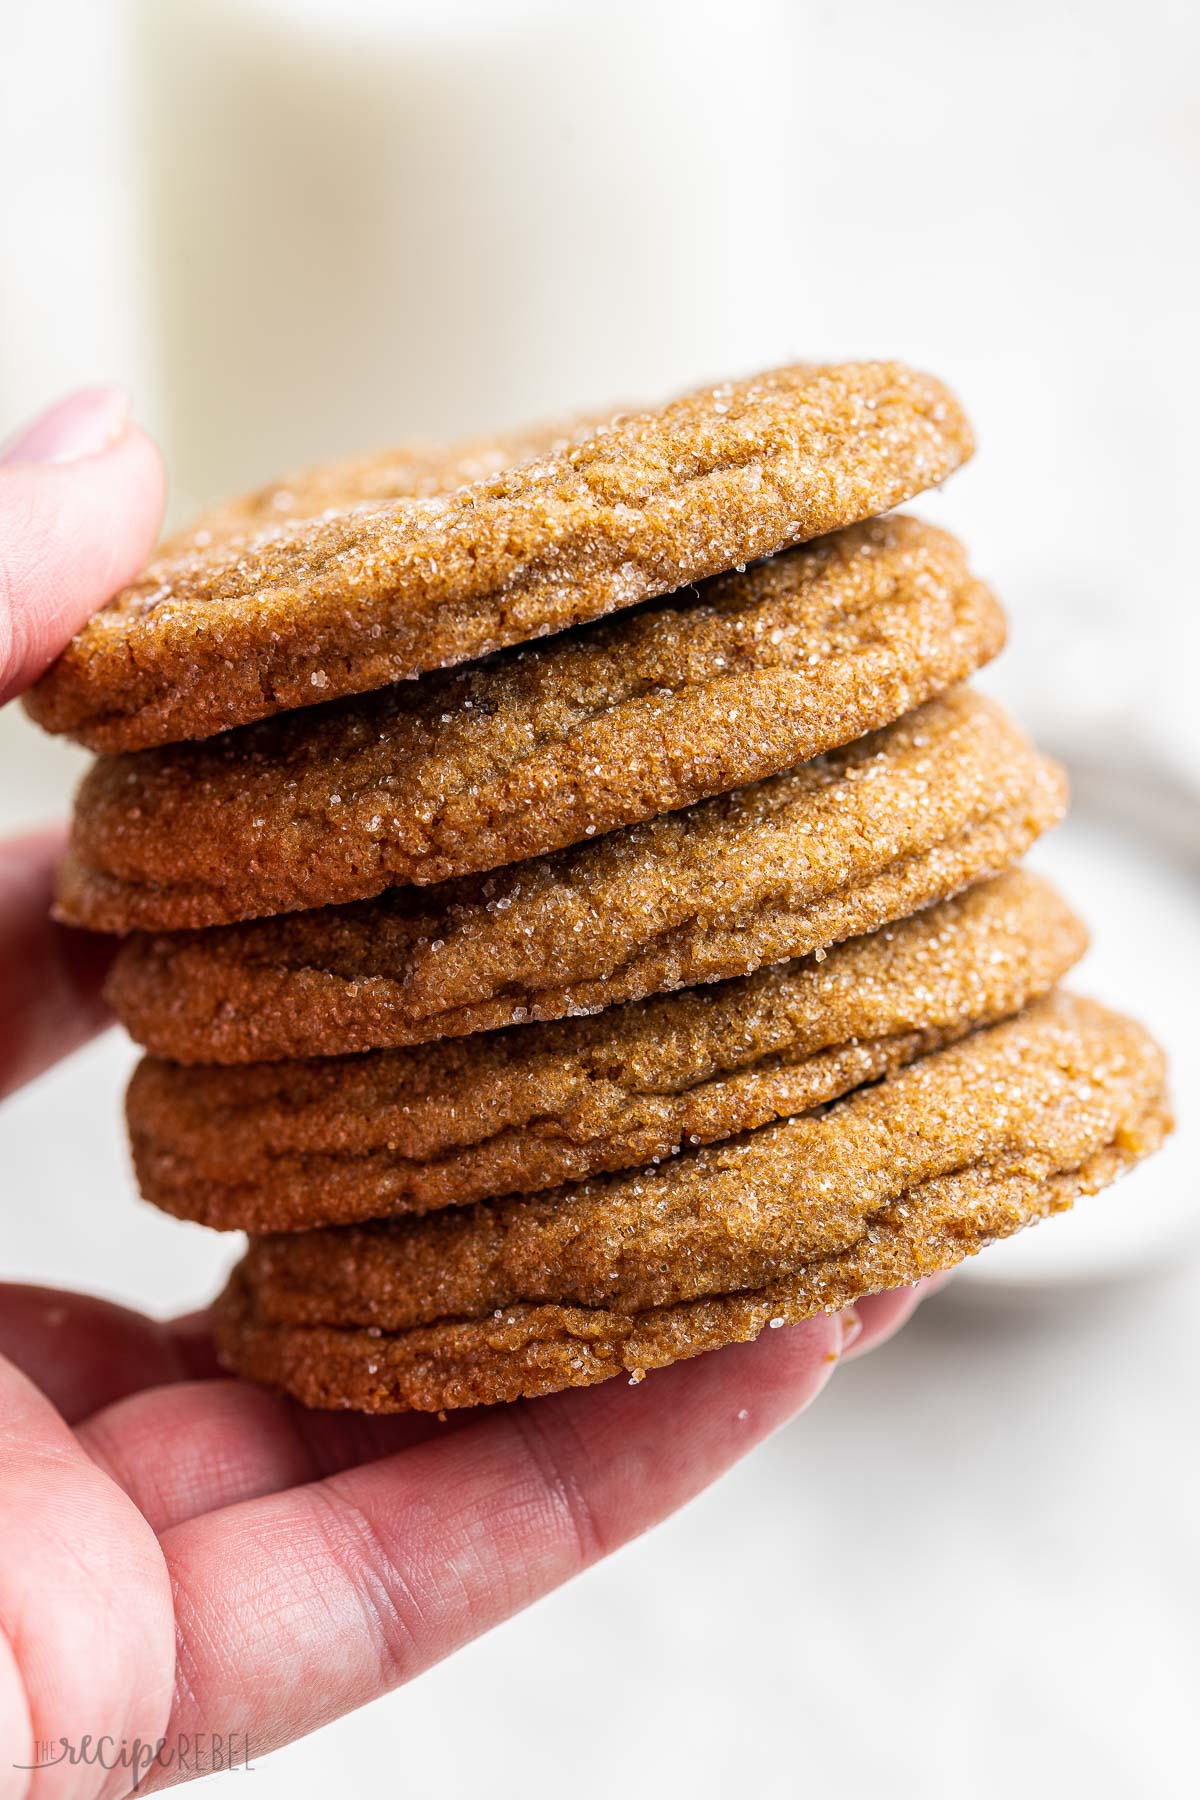 stack of five molasses cookies held in hand.